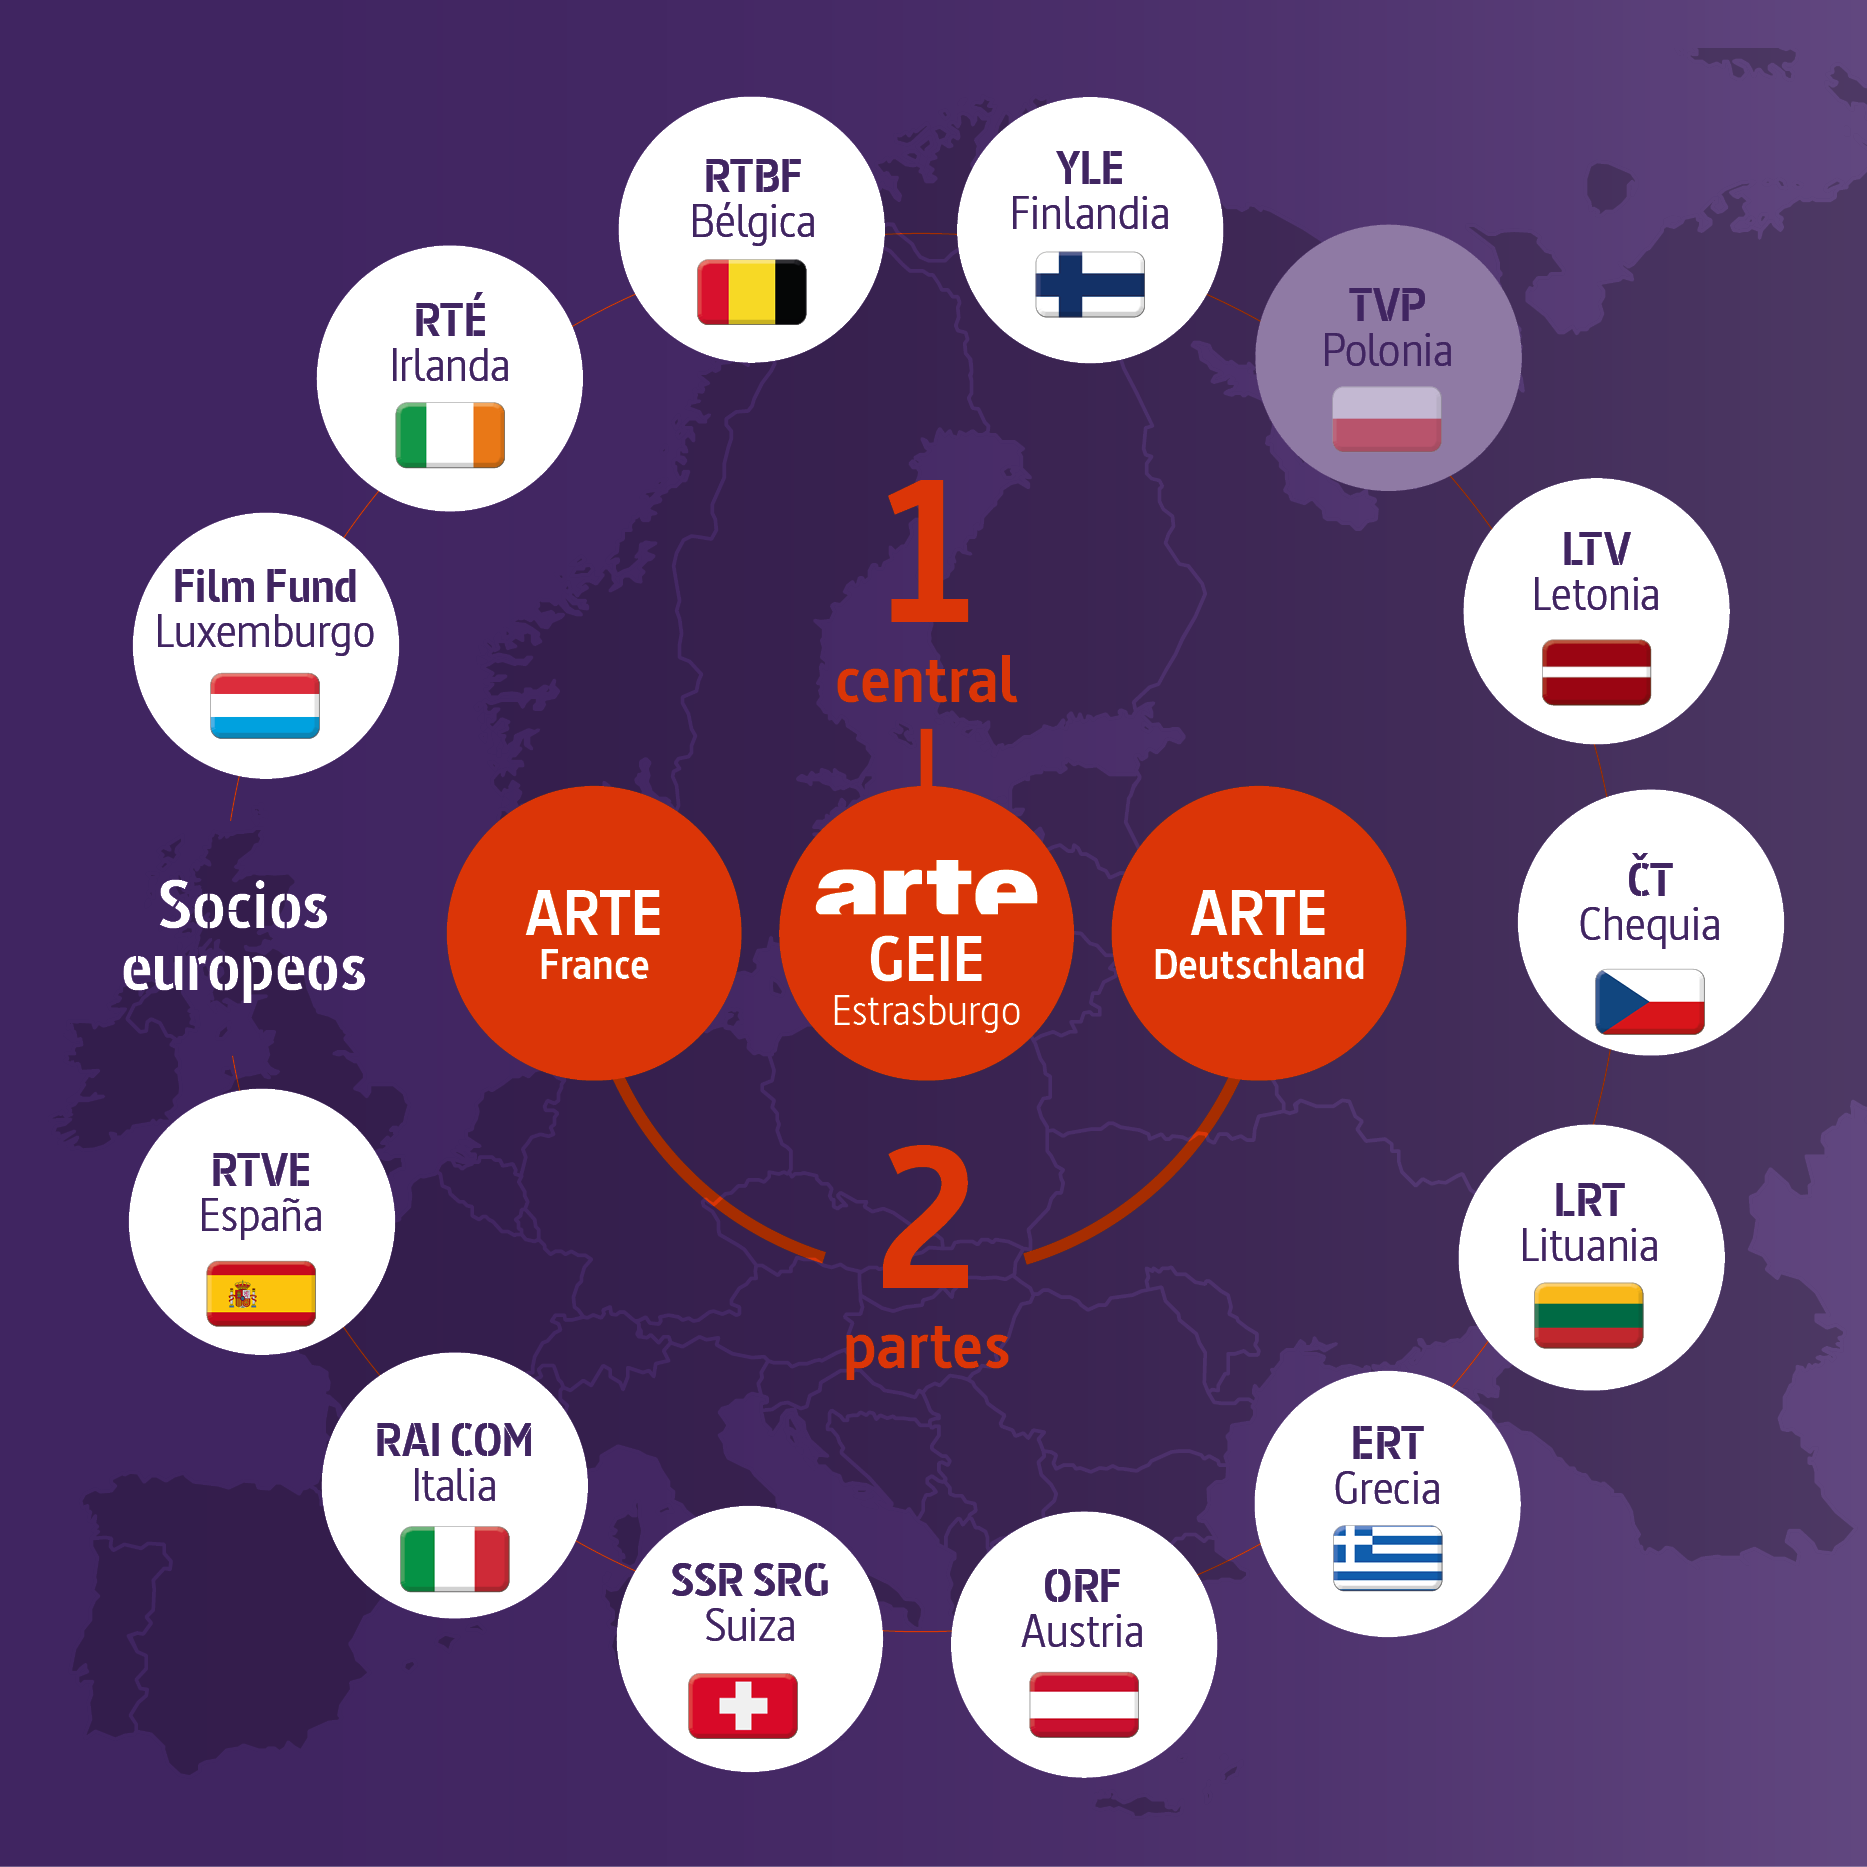 Una central: ARTE GEIE en Estrasburgo.
Dos partes: ARTE France y ARTE Deutschland.
Los socios en Europa: el Film Fund Luxemburgo, la RTÉ en Irlanda, la RTBF en Bélgica, YLE en Finlandia, (la TVP en Polonia), la LTV en Letonia, la ČT en Chequia, la LRT en Lituania, ERT en Grecia, ORF en Austria, la SSR SRG en Suiza, la RAI Com en Italia y la RTVE en España.